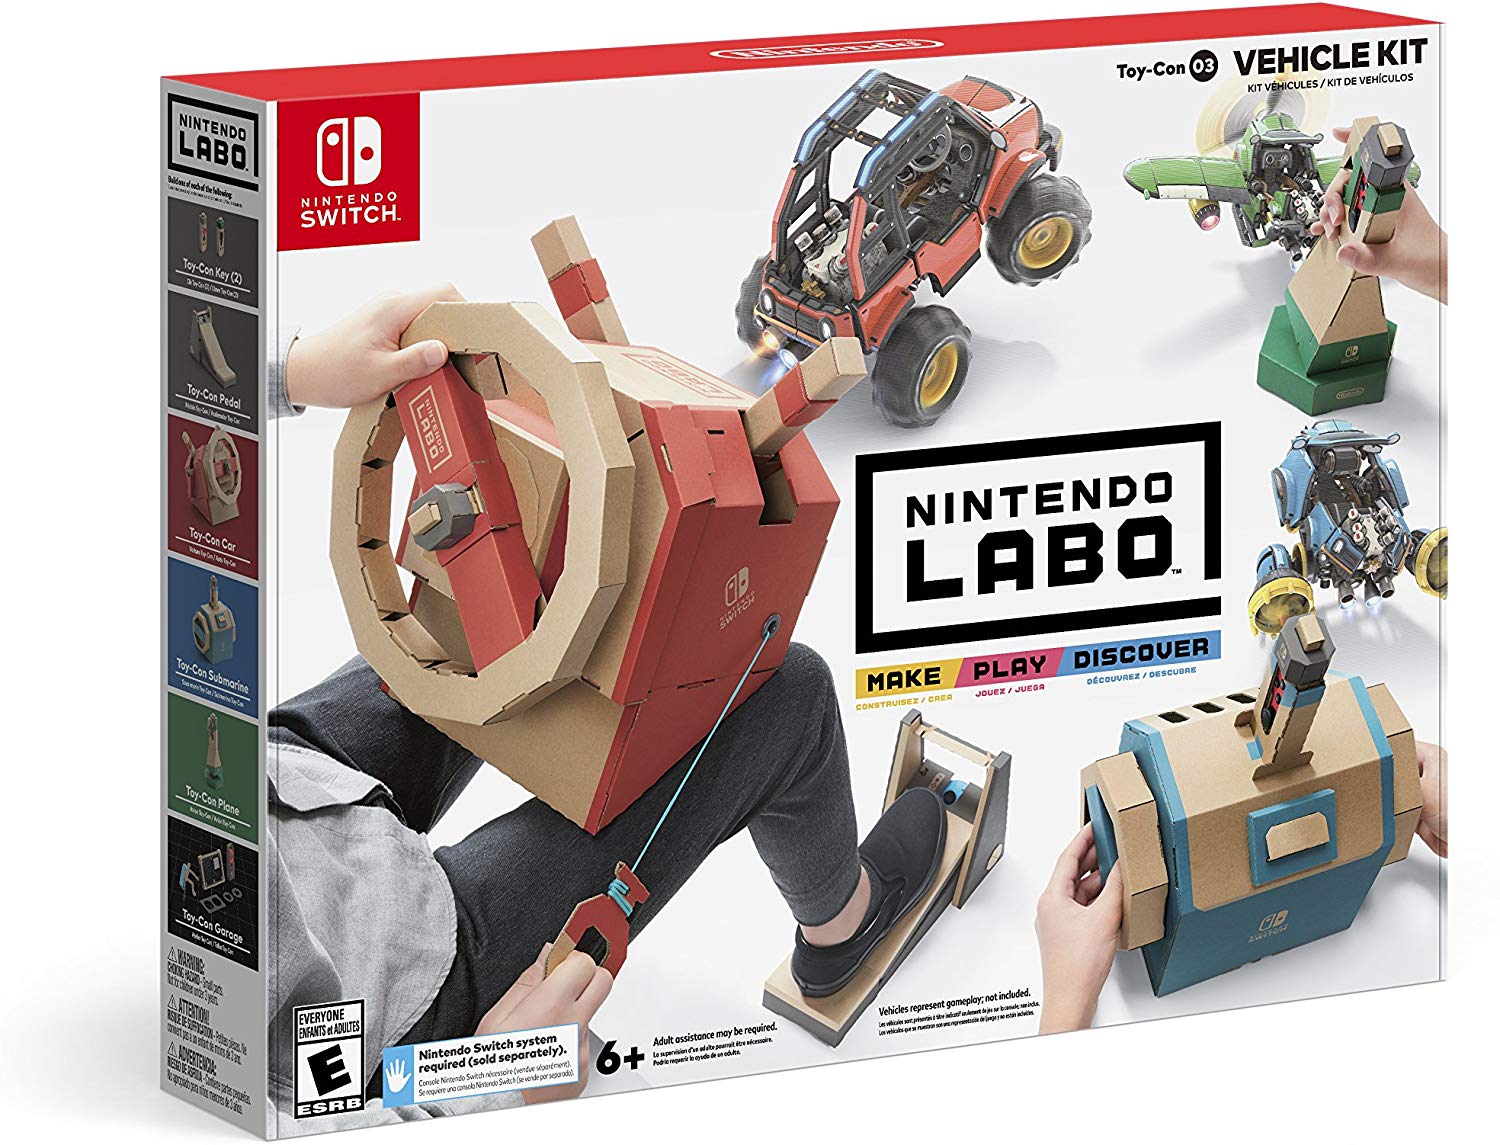 Nintendo Labo vehicles kit